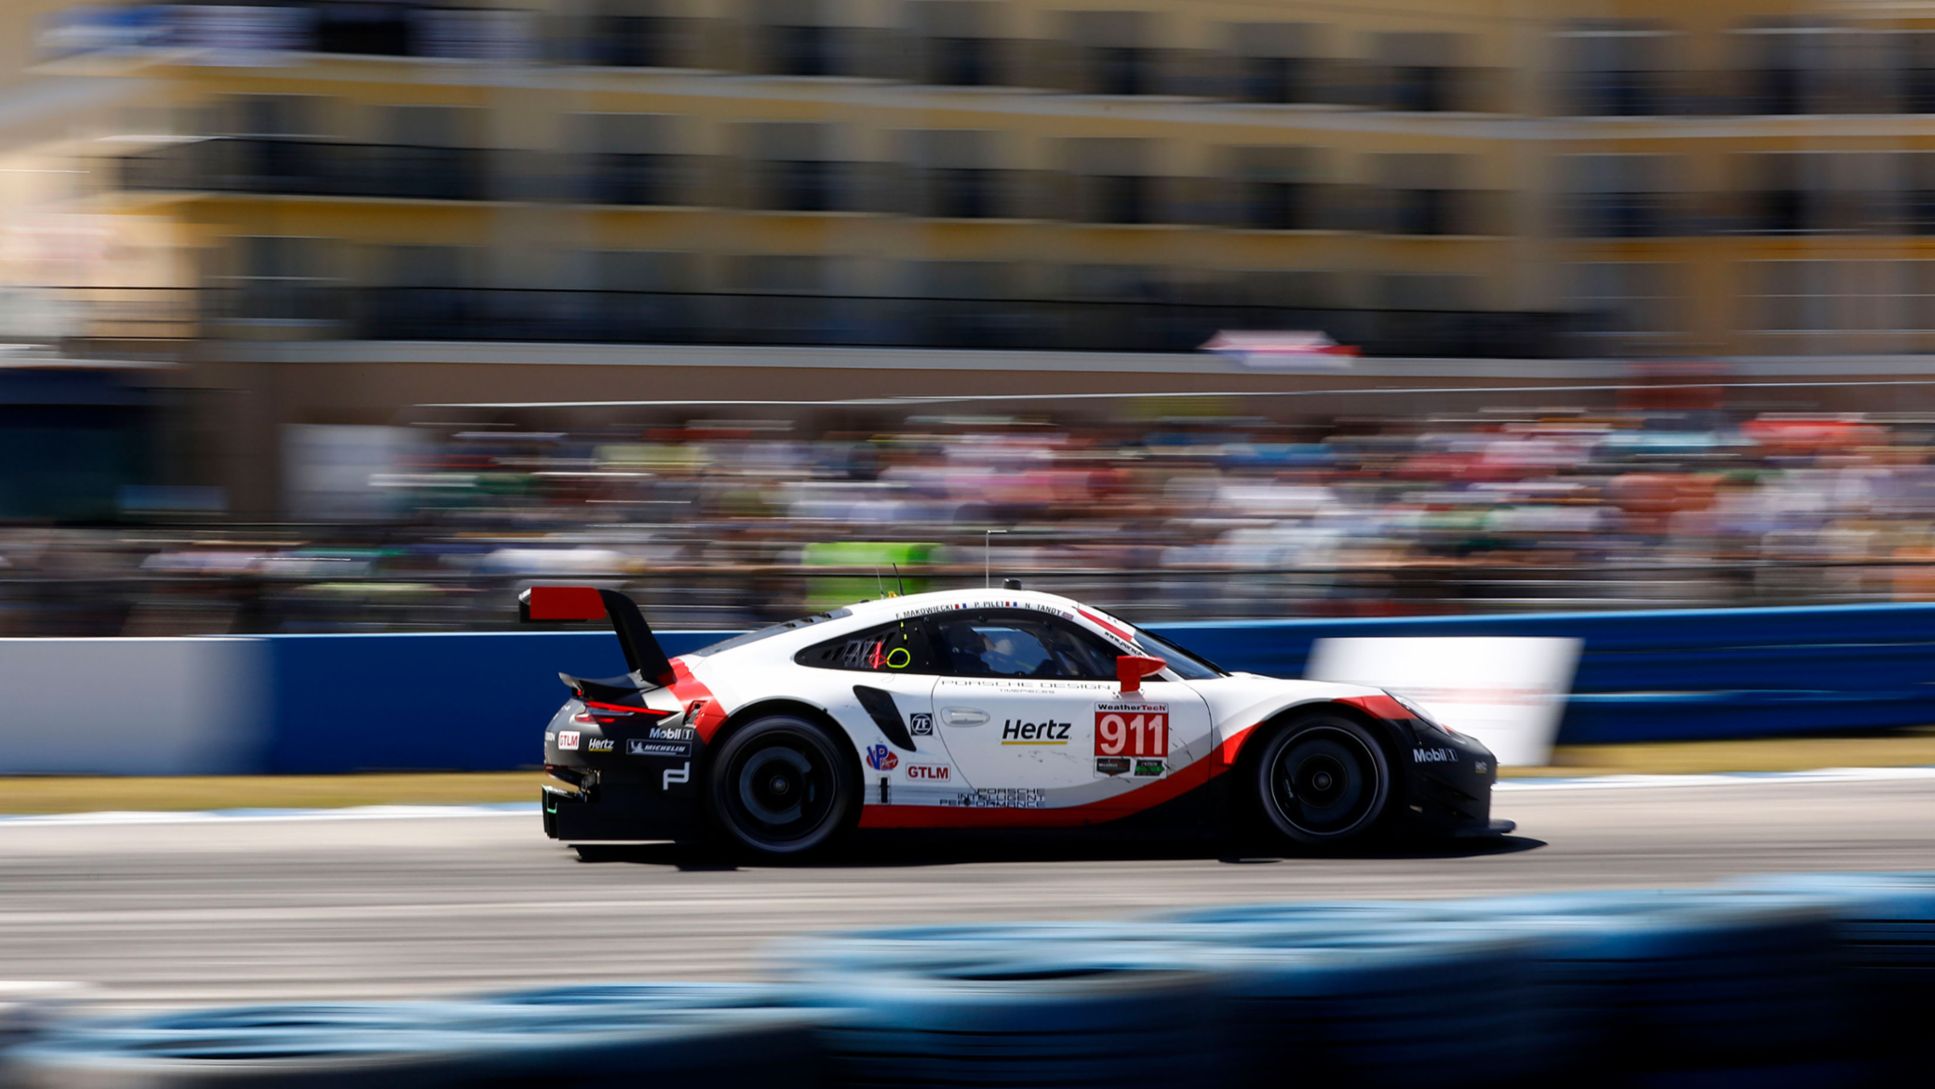 911 RSR, IMSA WeatherTech SportsCar Championship, 2. Lauf, 12 Stunden von Sebring, USA, 2018, Porsche AG